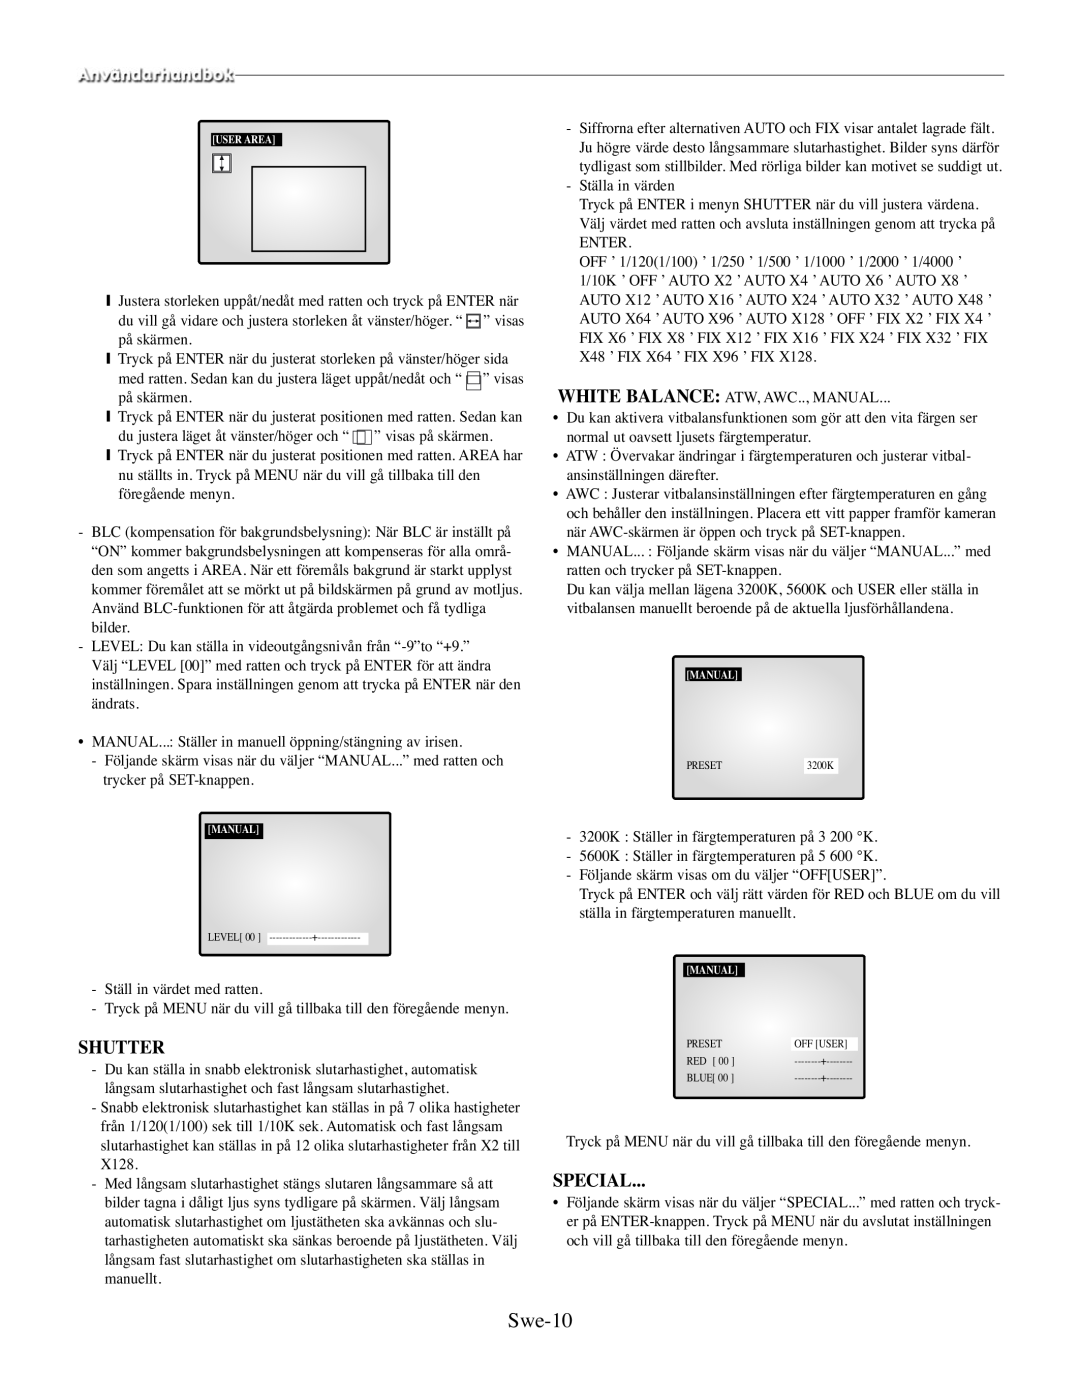 Samsung SMO-210MP/UMG, SMO-210TRP manual Swe-10, Shutter, Special 